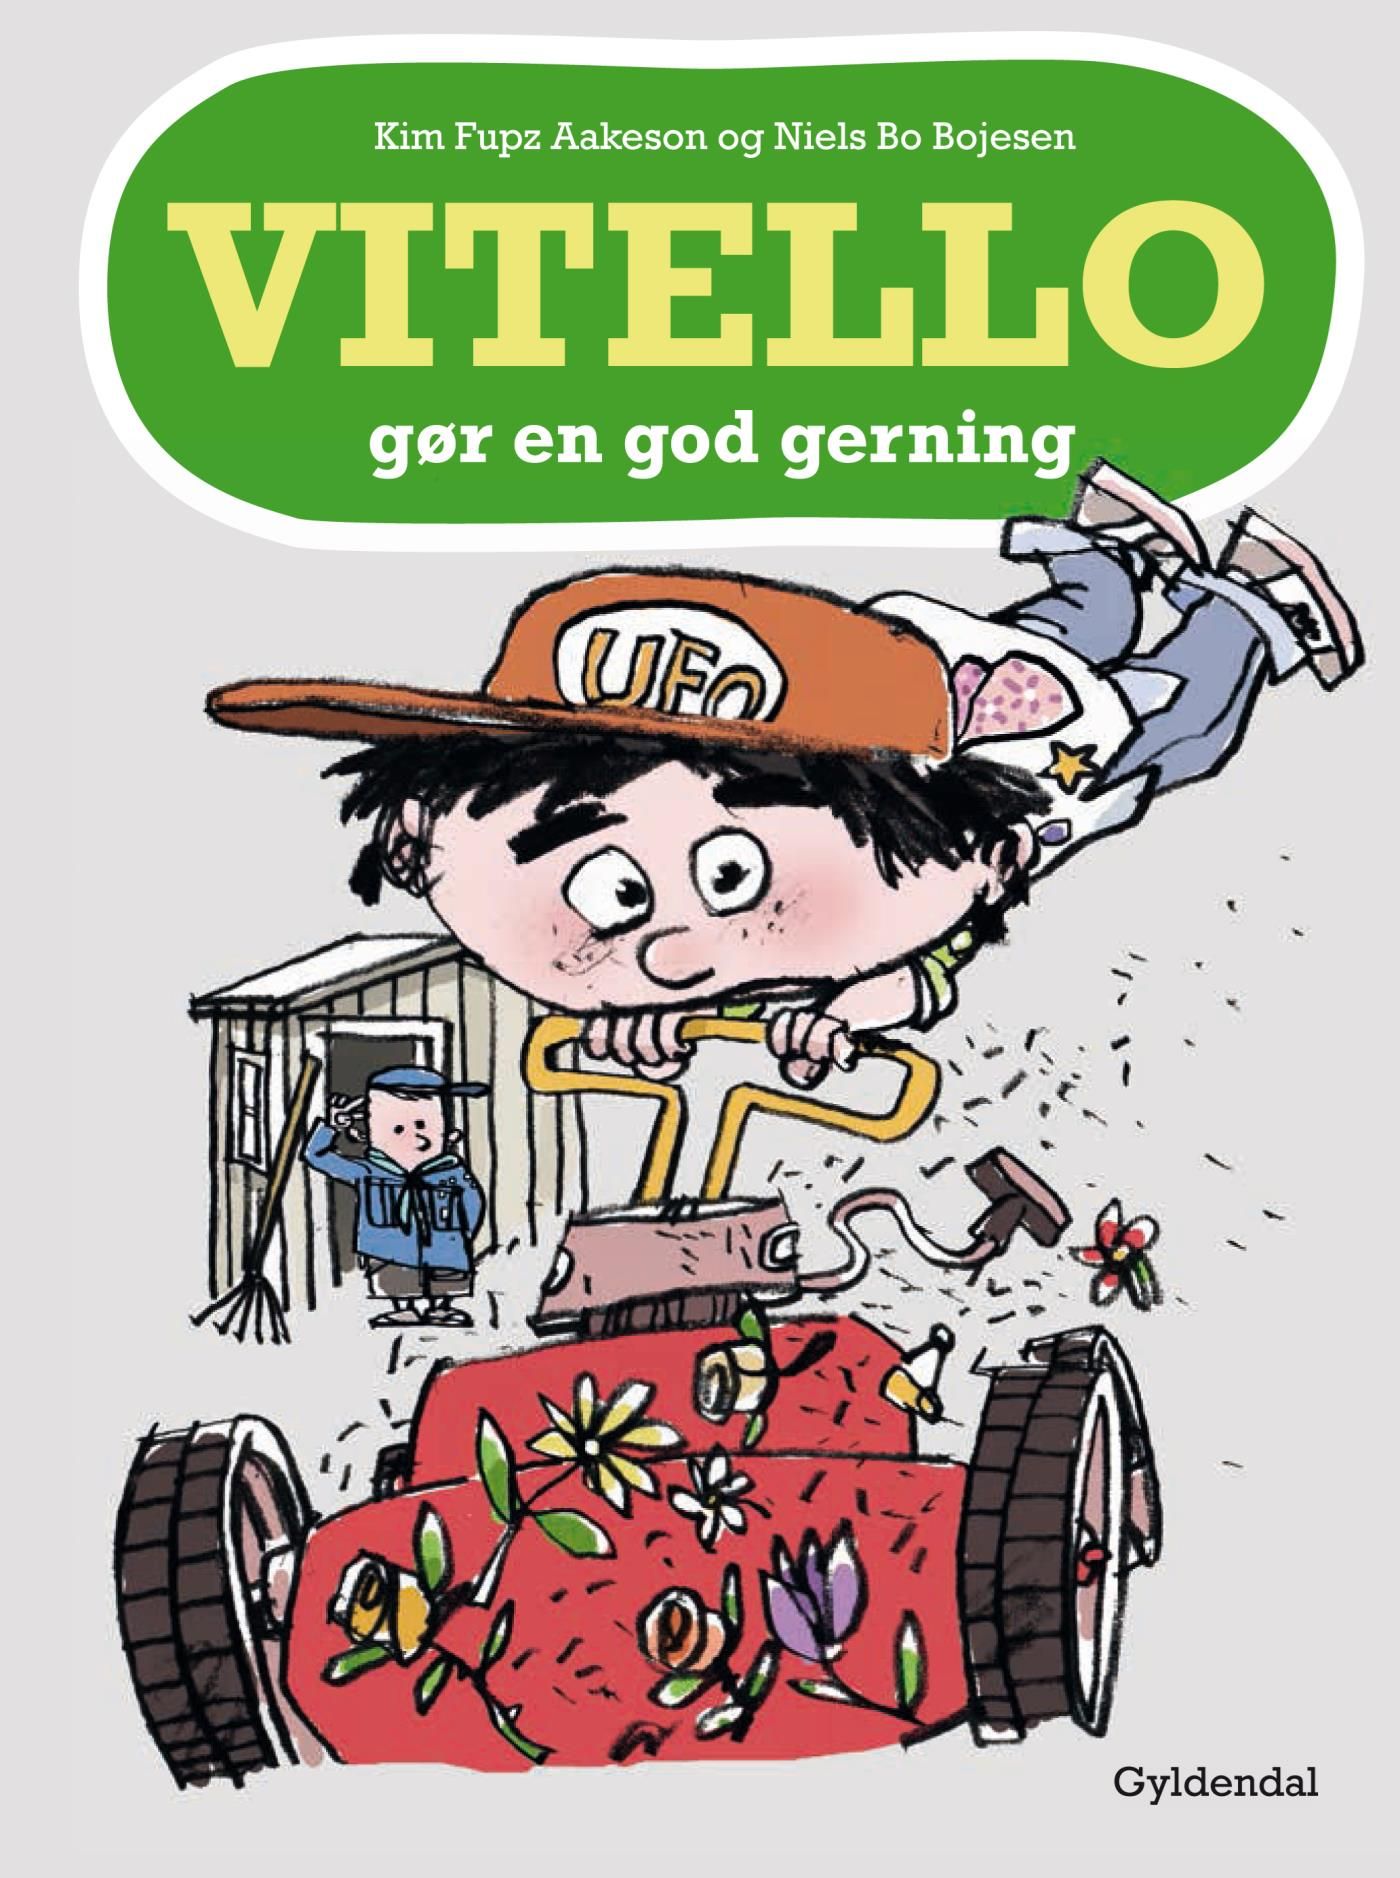 Vitello gør en god gerning - Lyt&læs, e-bog af Niels Bo Bojesen, Kim Fupz Aakeson